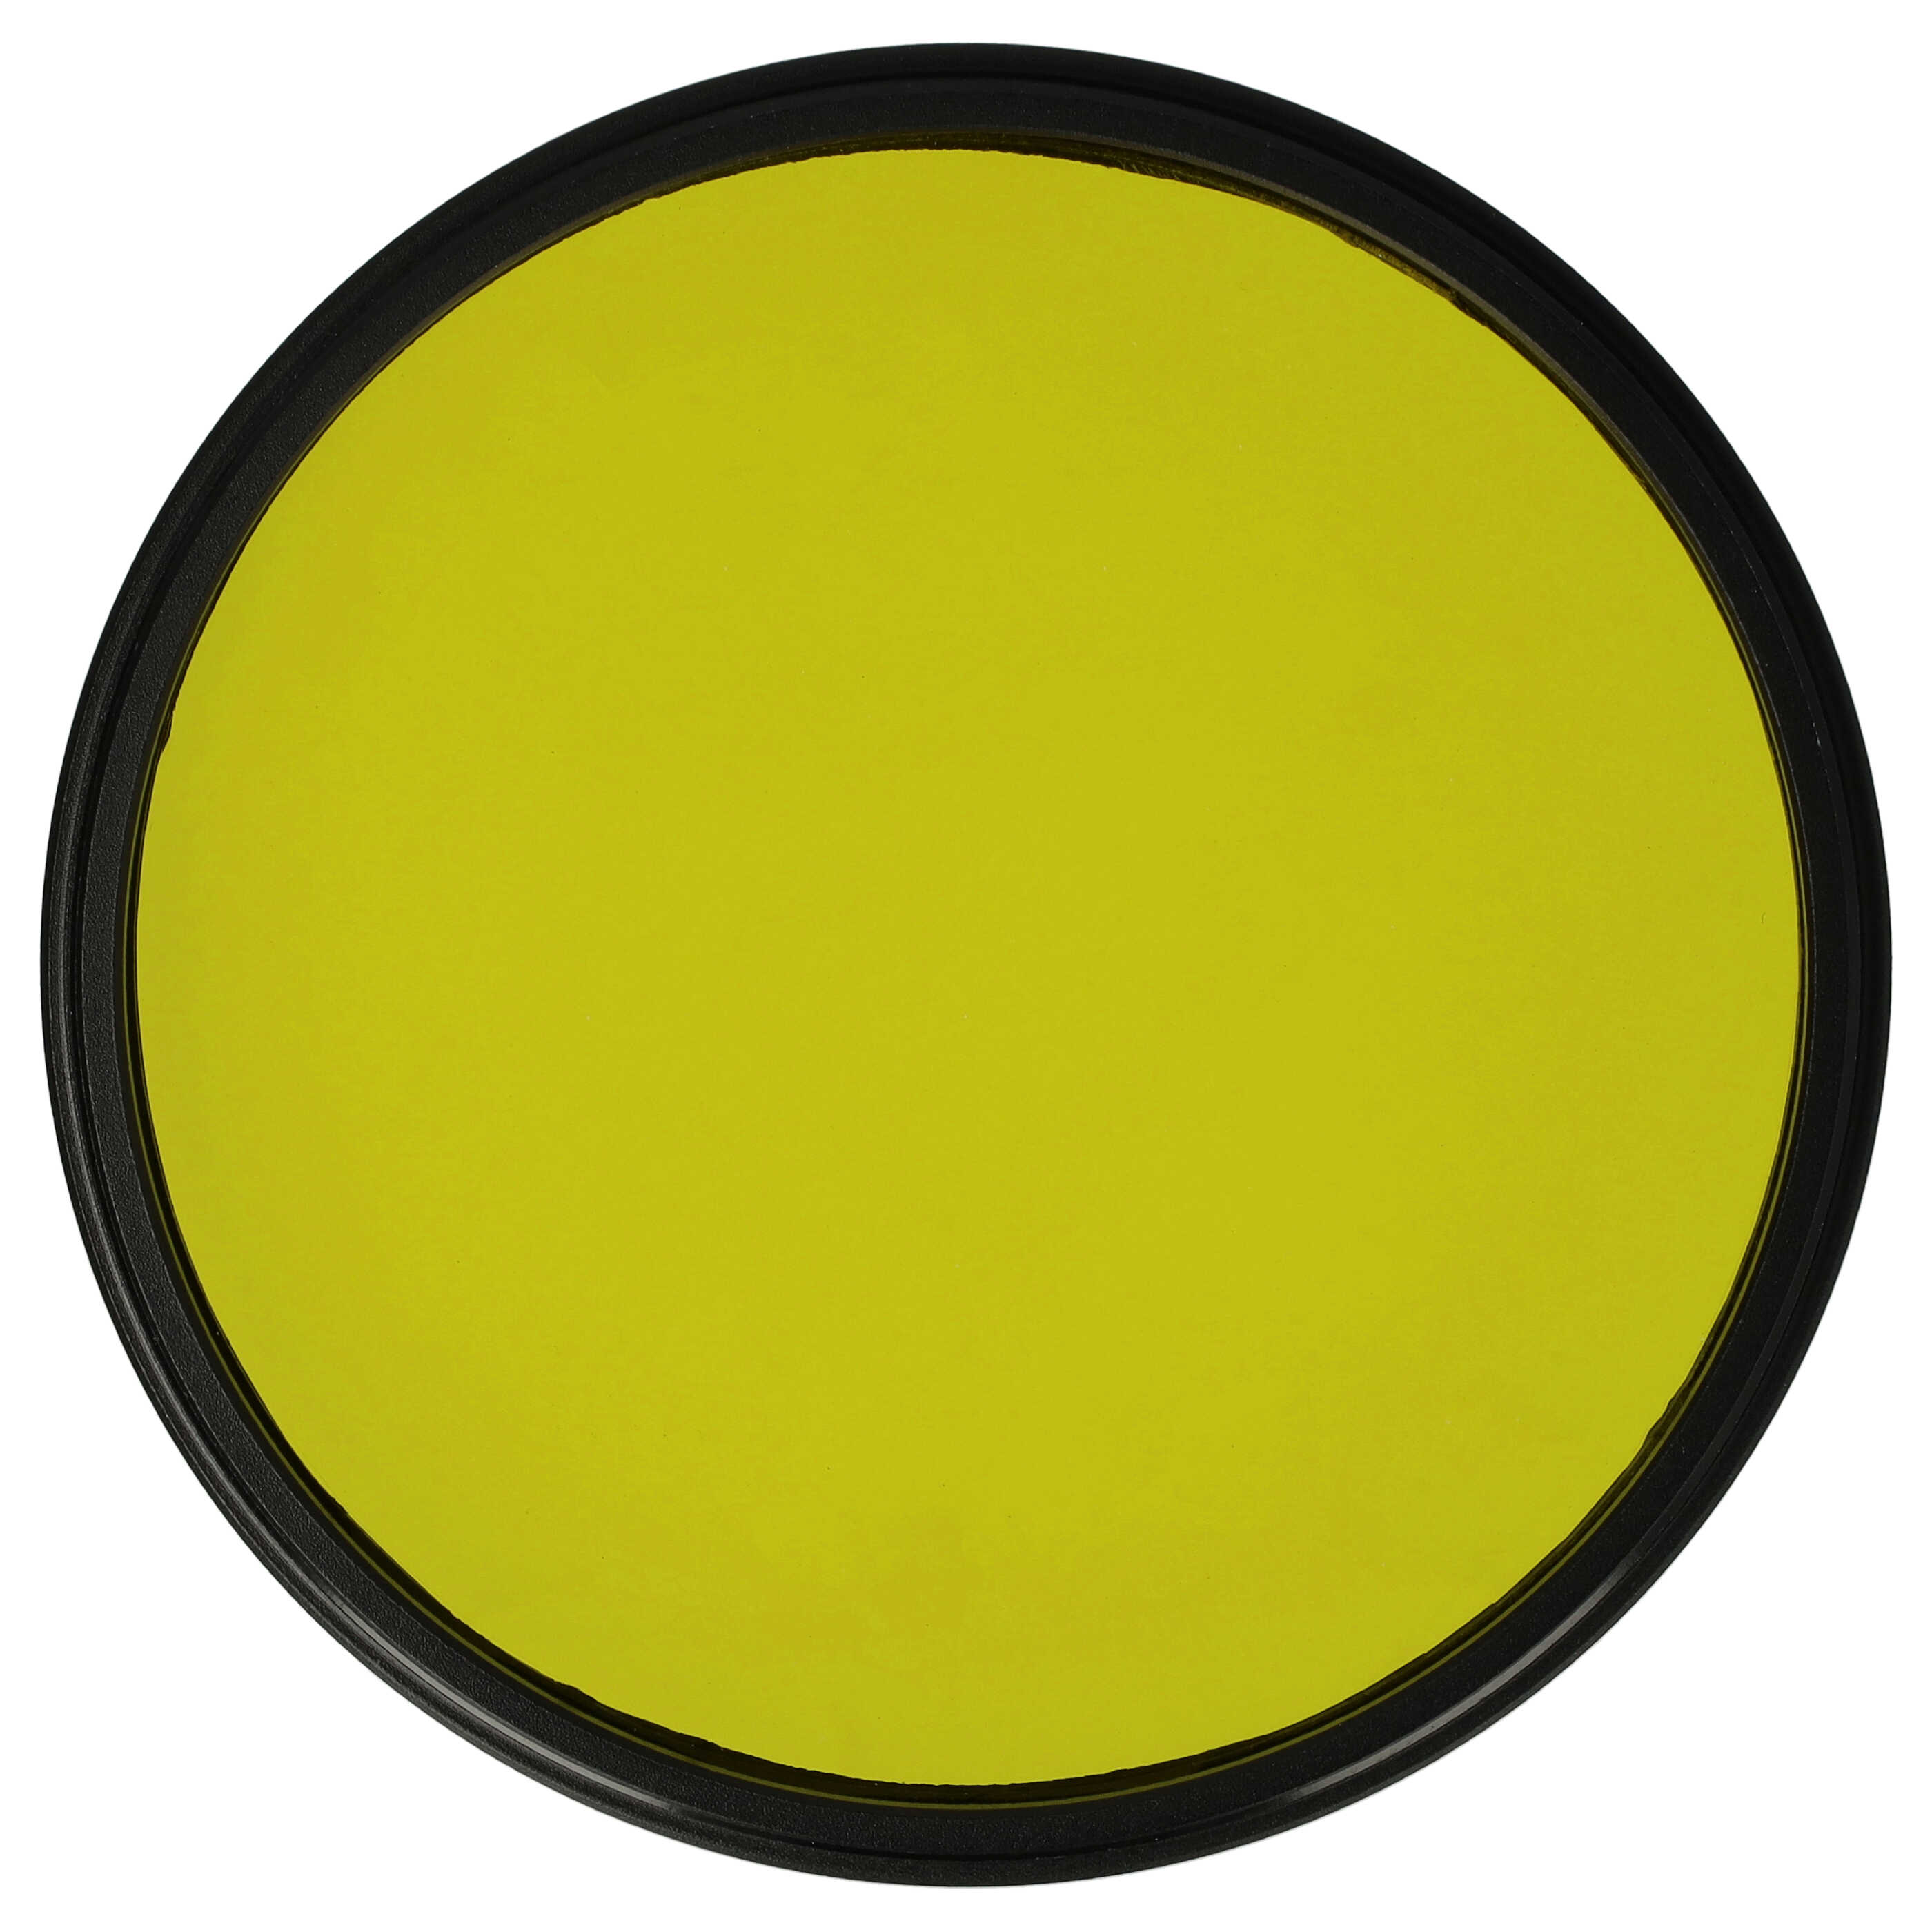 Farbfilter gelb passend für Kamera Objektive mit 72 mm Filtergewinde - Gelbfilter